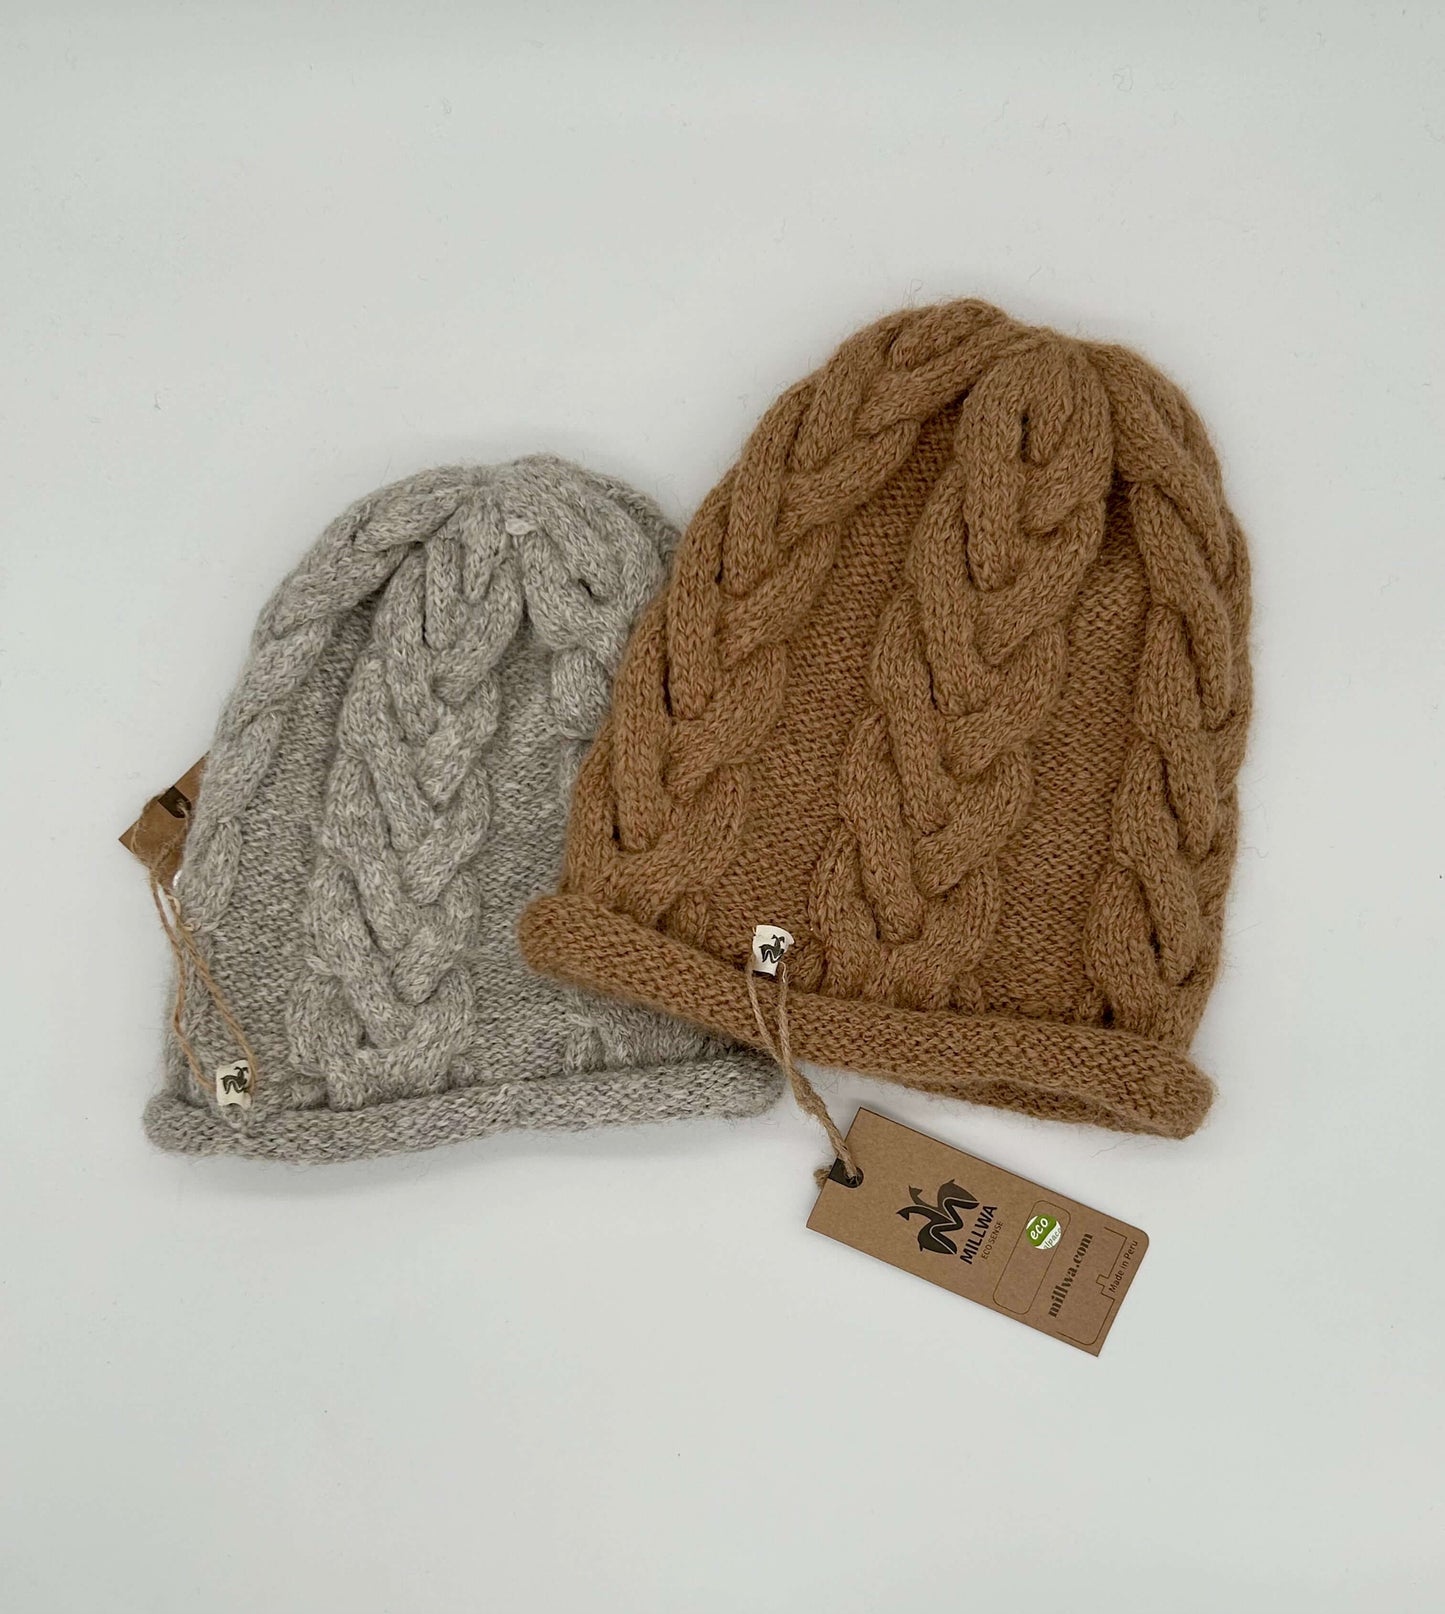 Gestrickte Mütze aus reiner Alpakawolle – schönes Design, kuschelig-weich und nachhaltig!